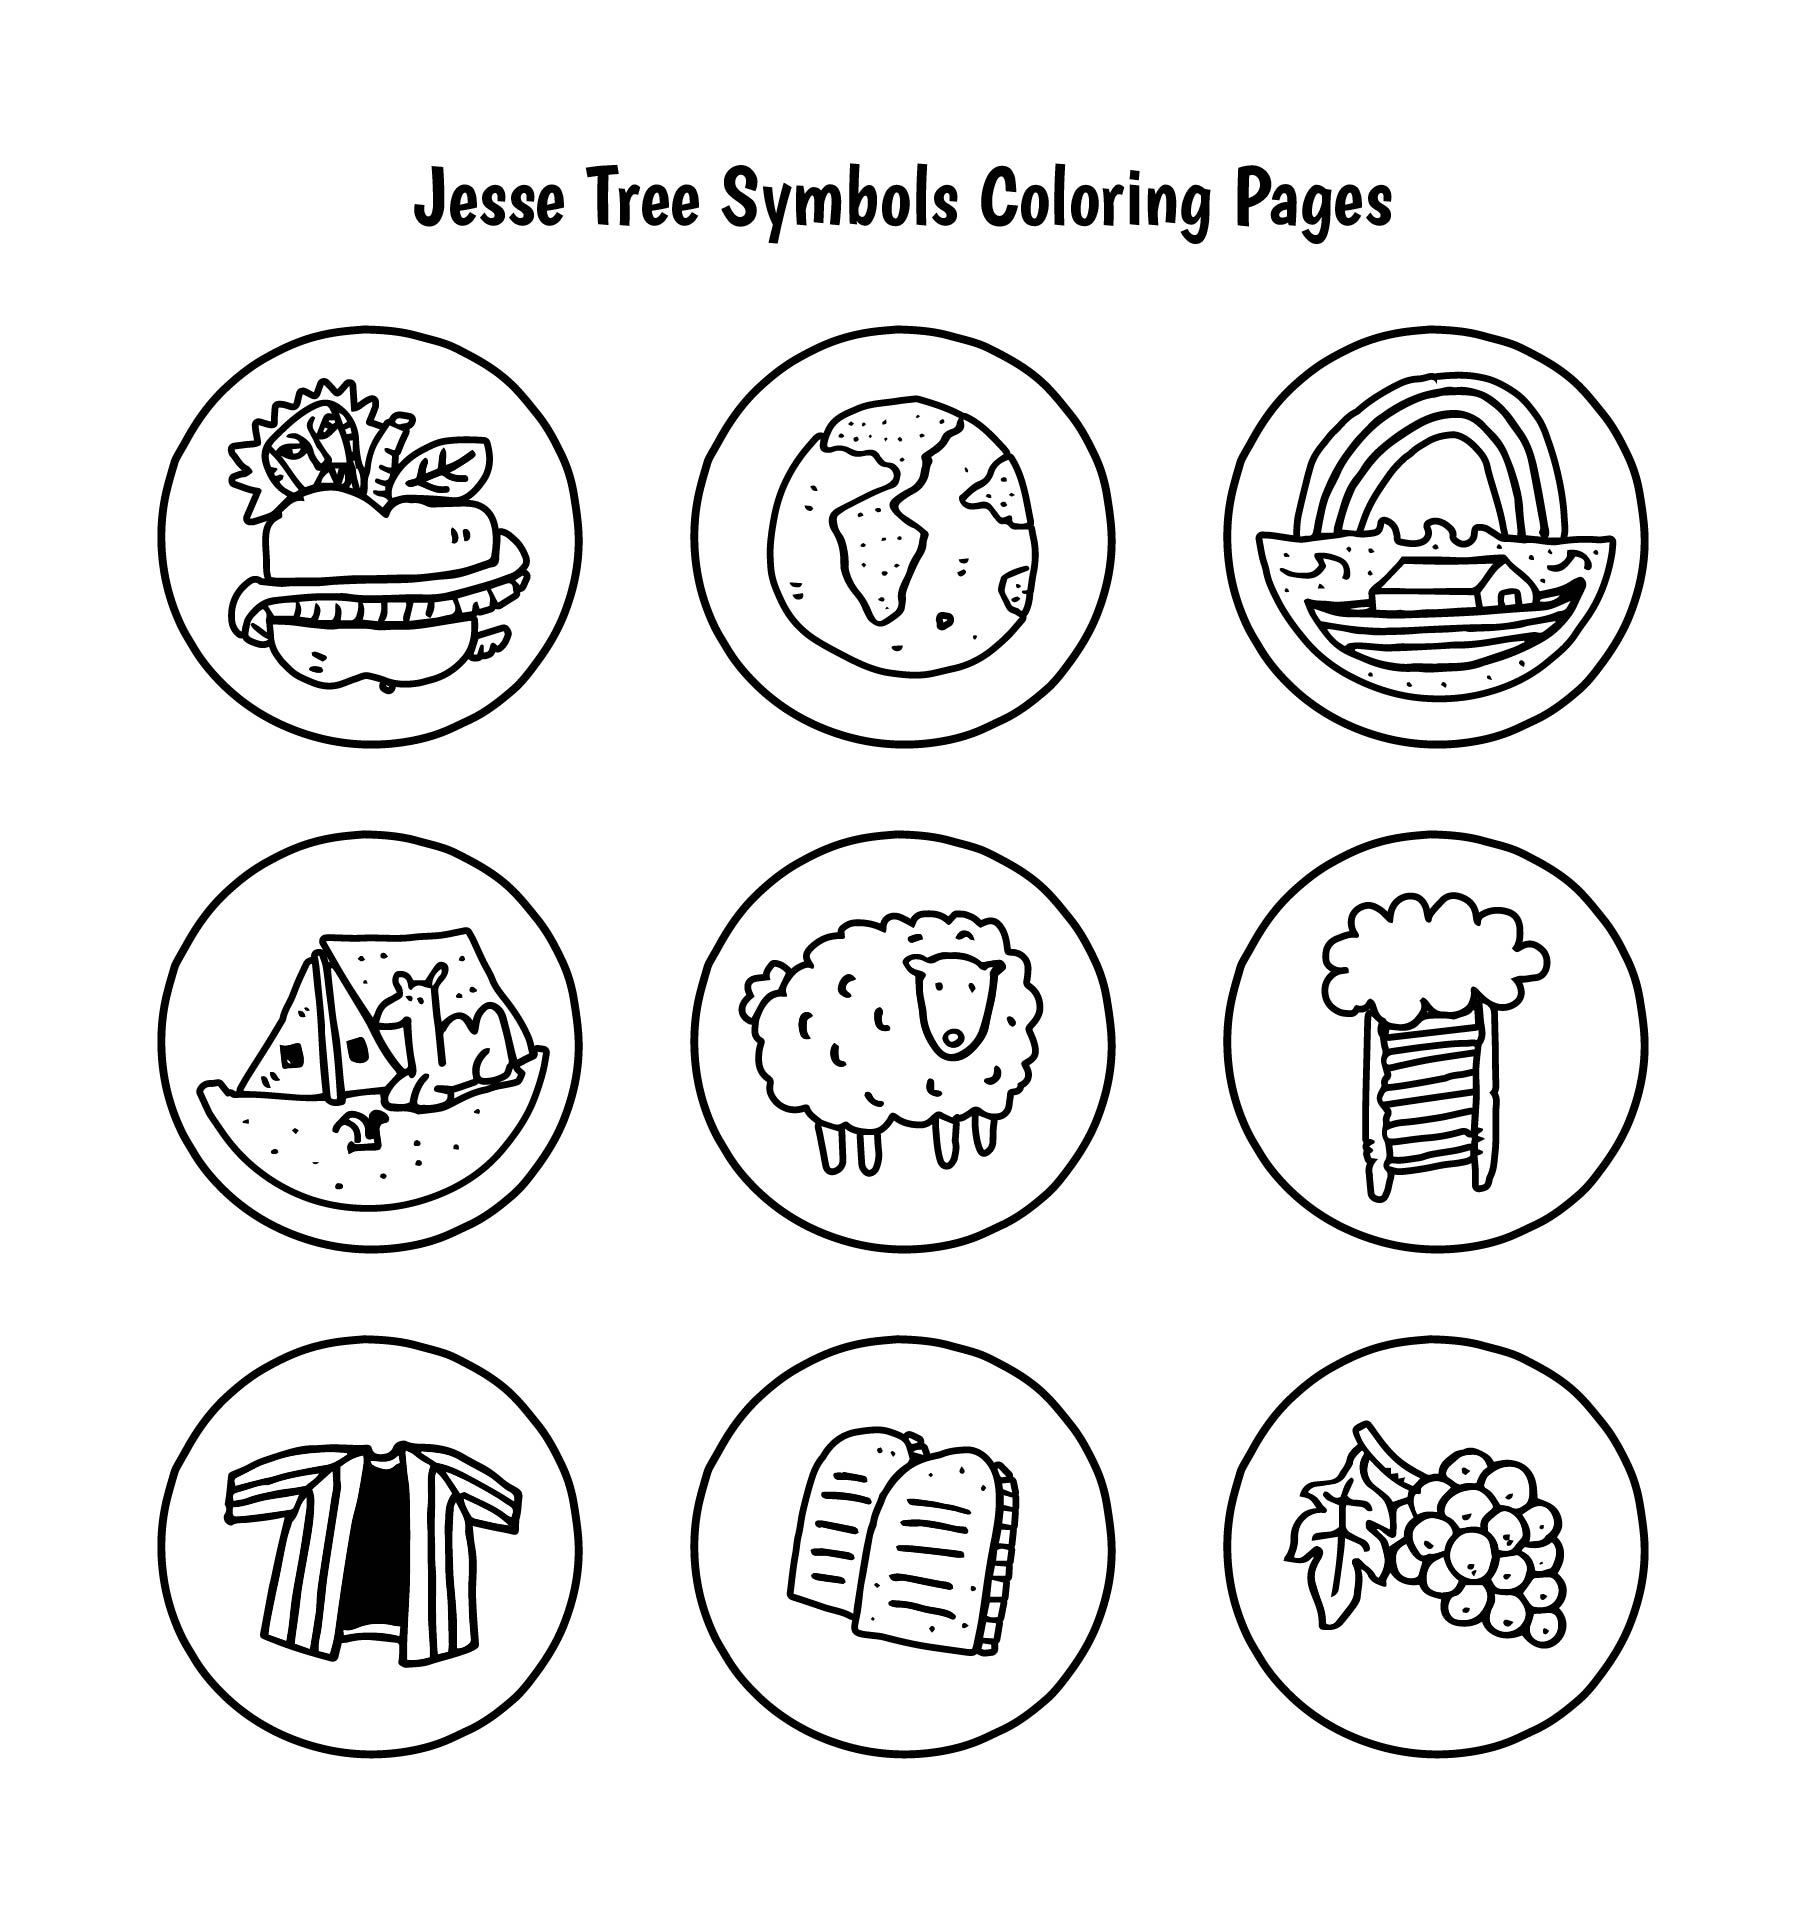 10 Best Printable Catholic Jesse Tree Symbols